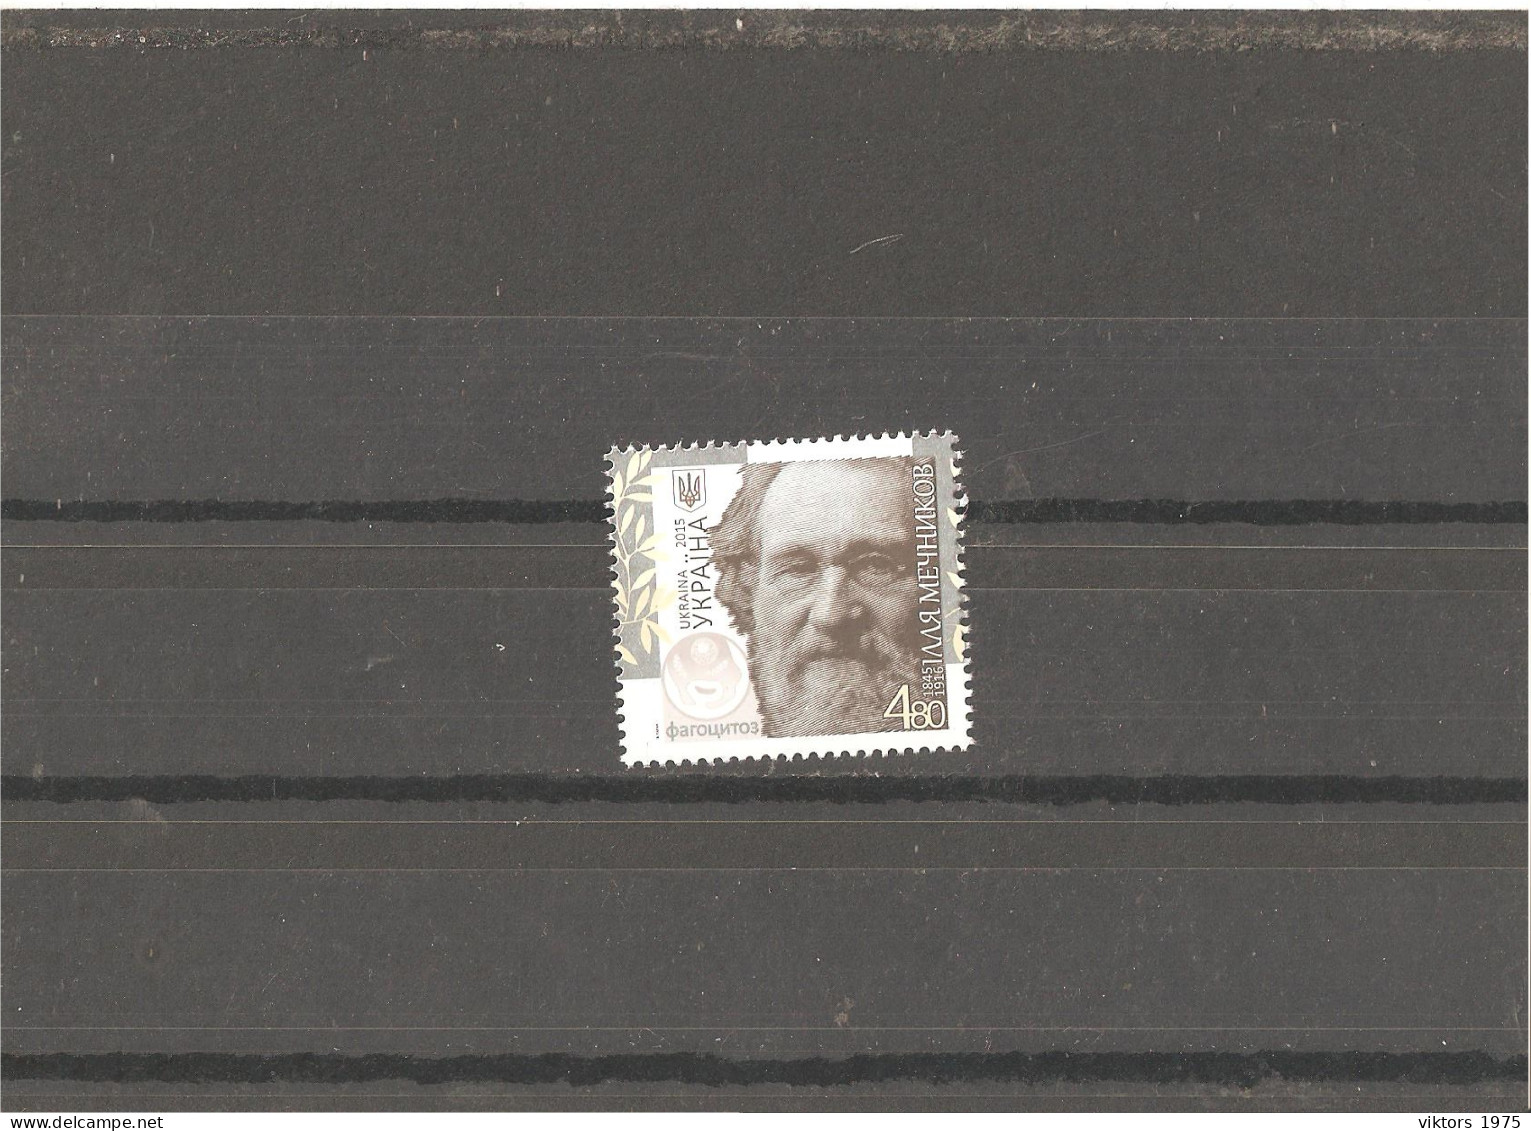 MNH Stamp Nr.1477 In MICHEL Catalog - Ukraine